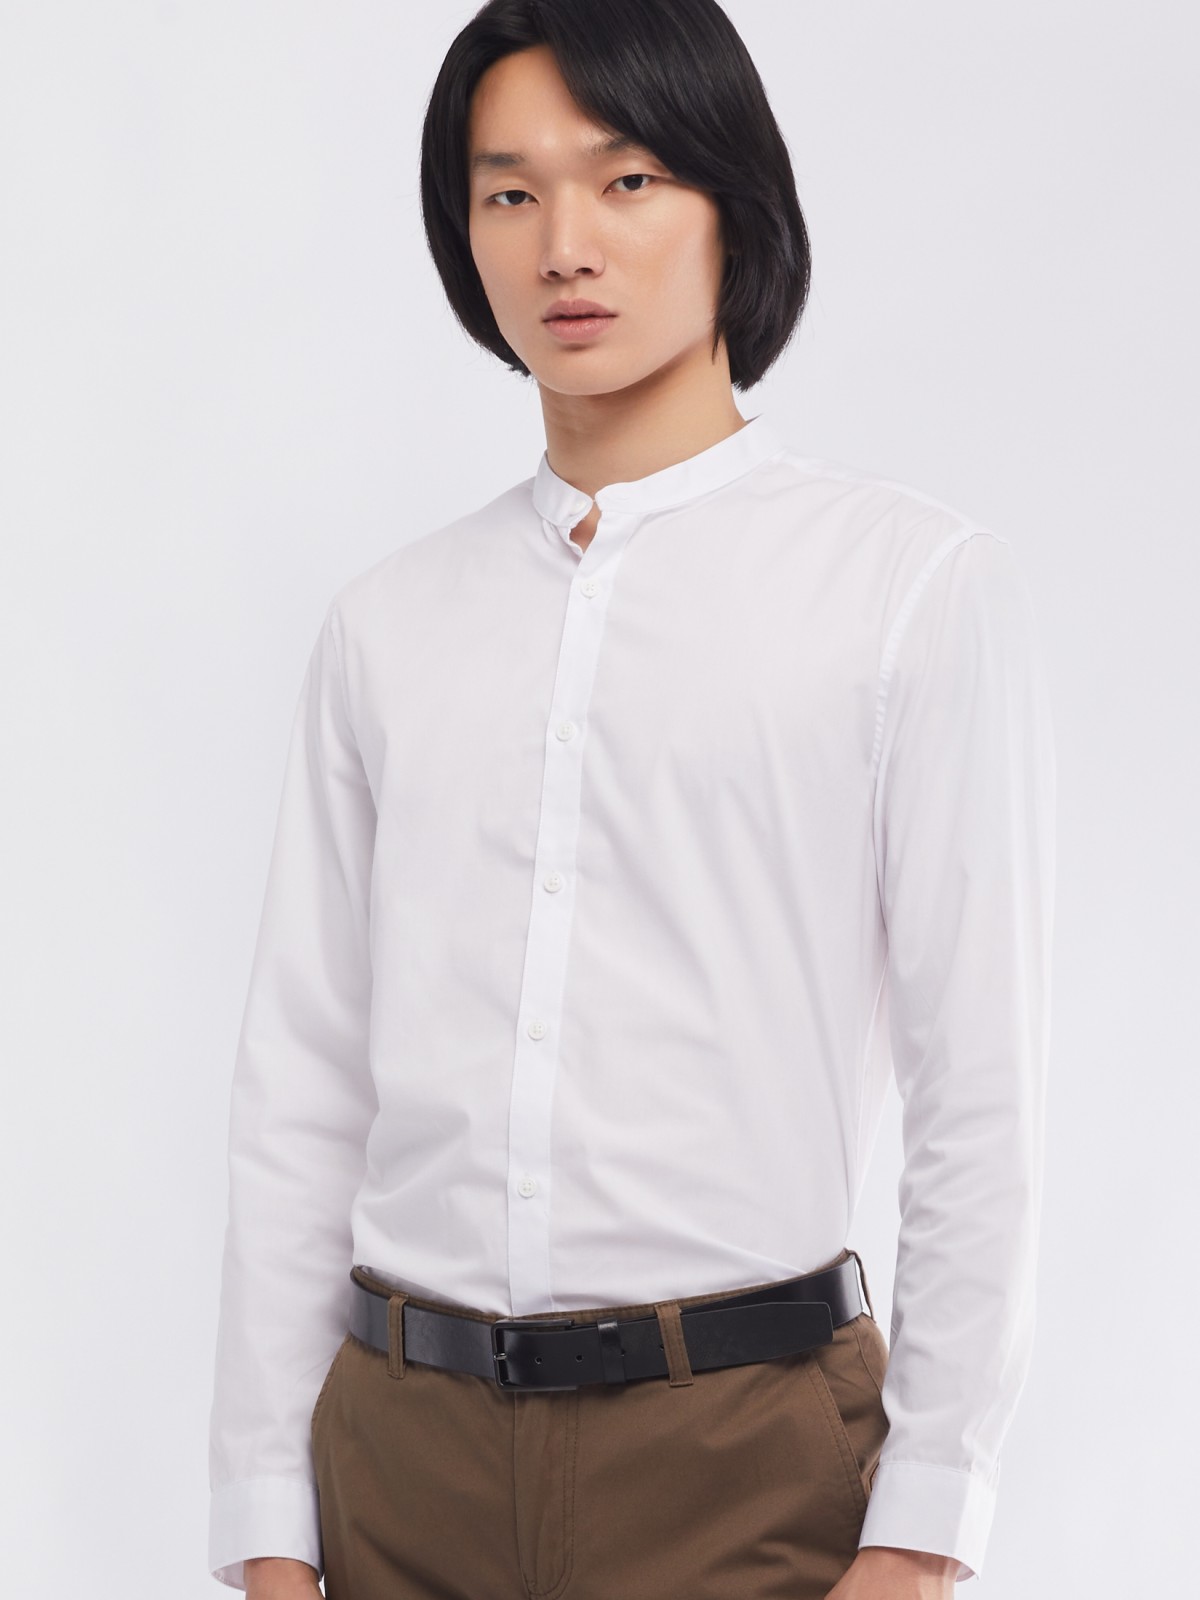 Офисная рубашка с воротником-стойкой и длинным рукавом zolla 01411217W072, цвет белый, размер M - фото 1